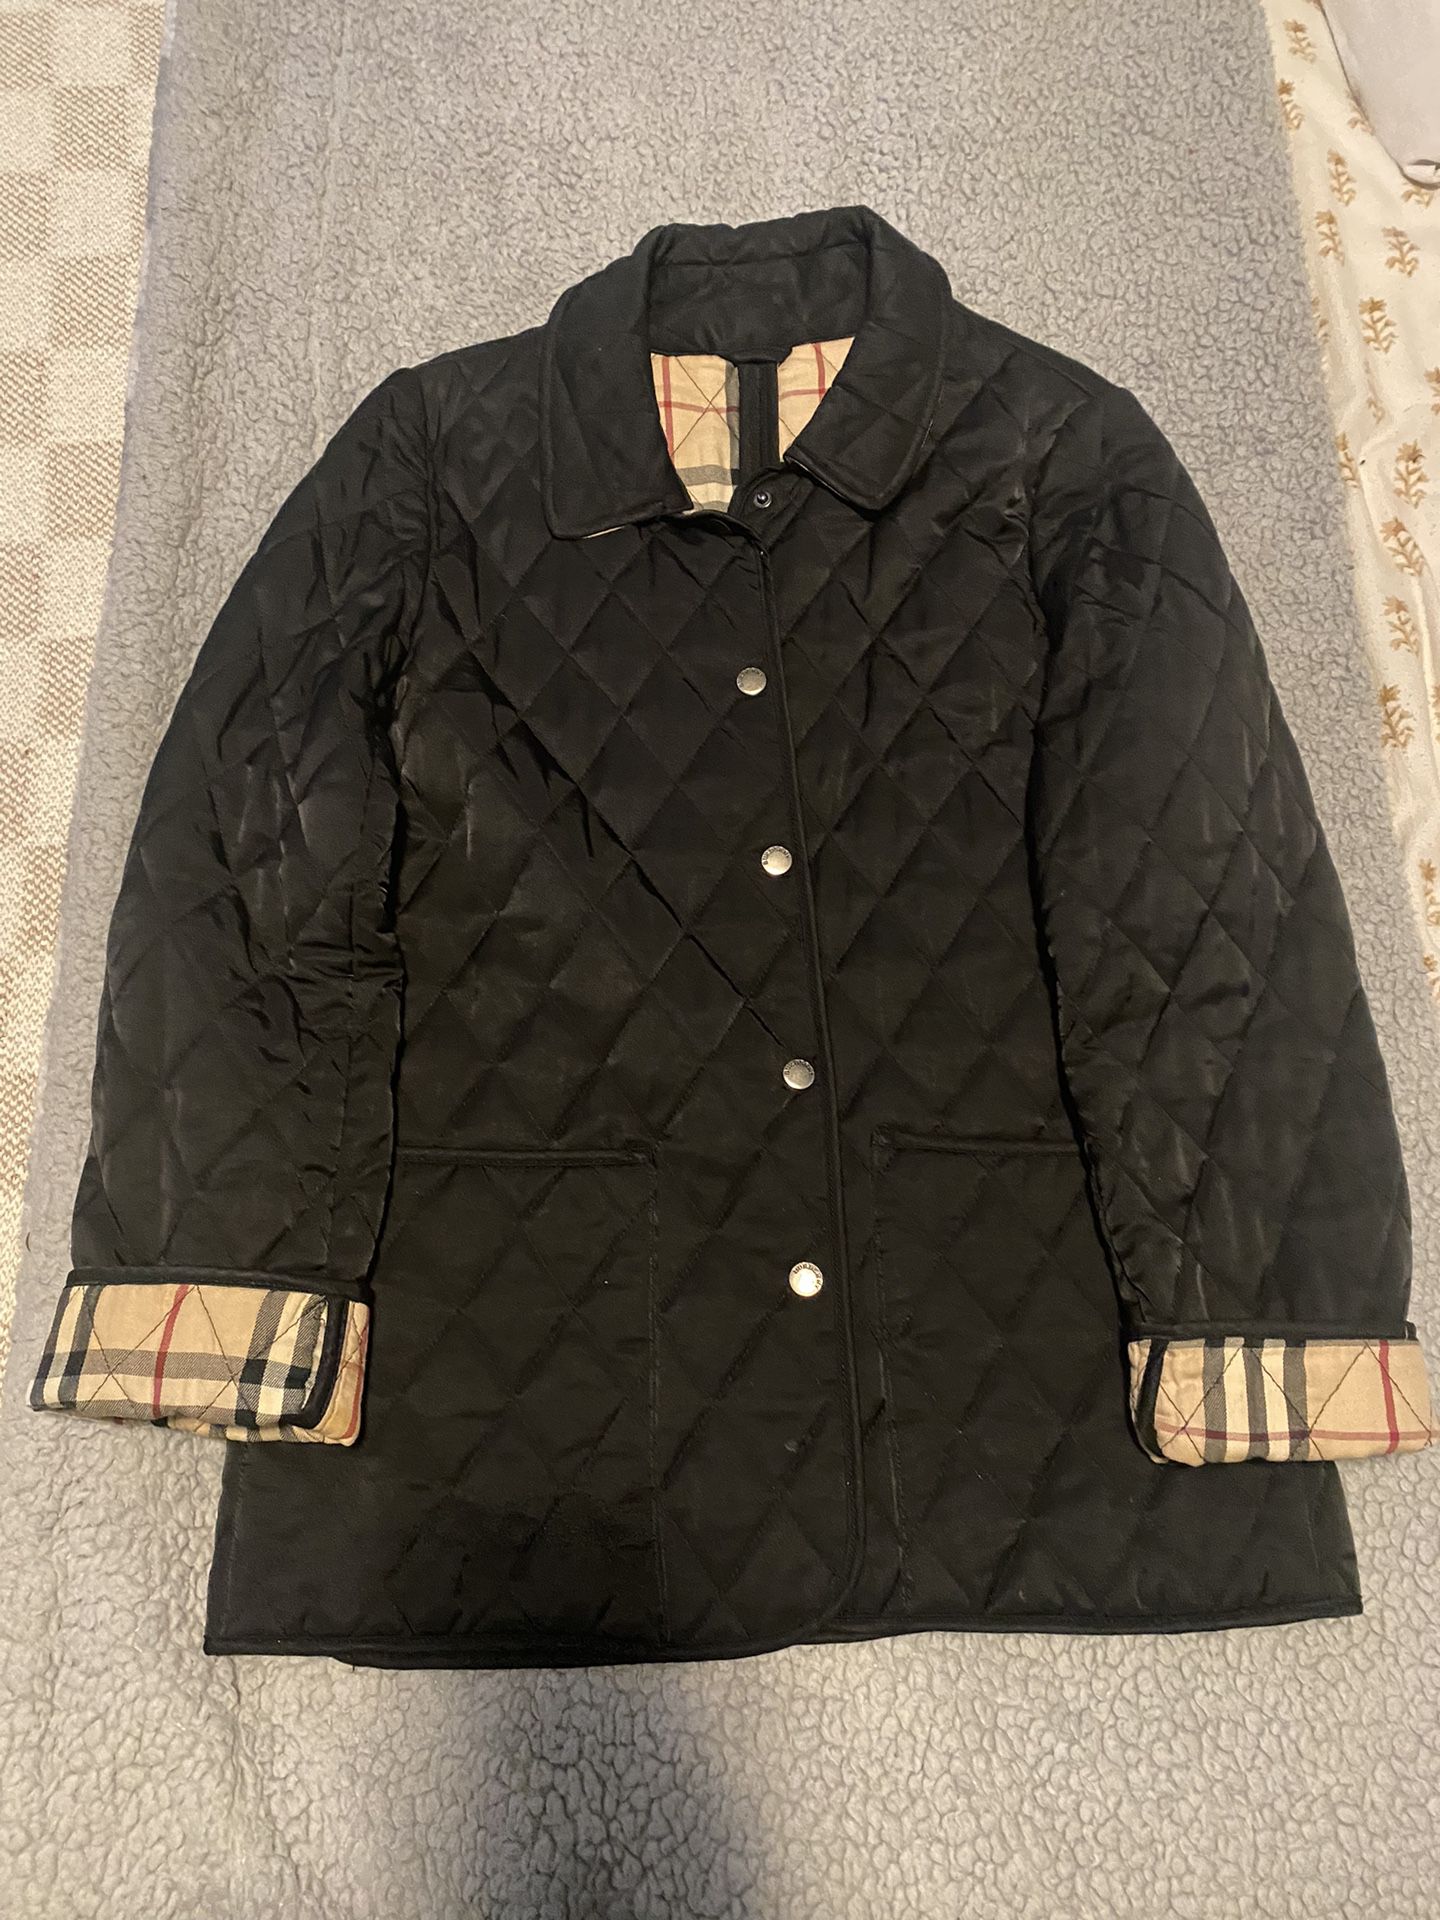 Burberry jacket Size Medium